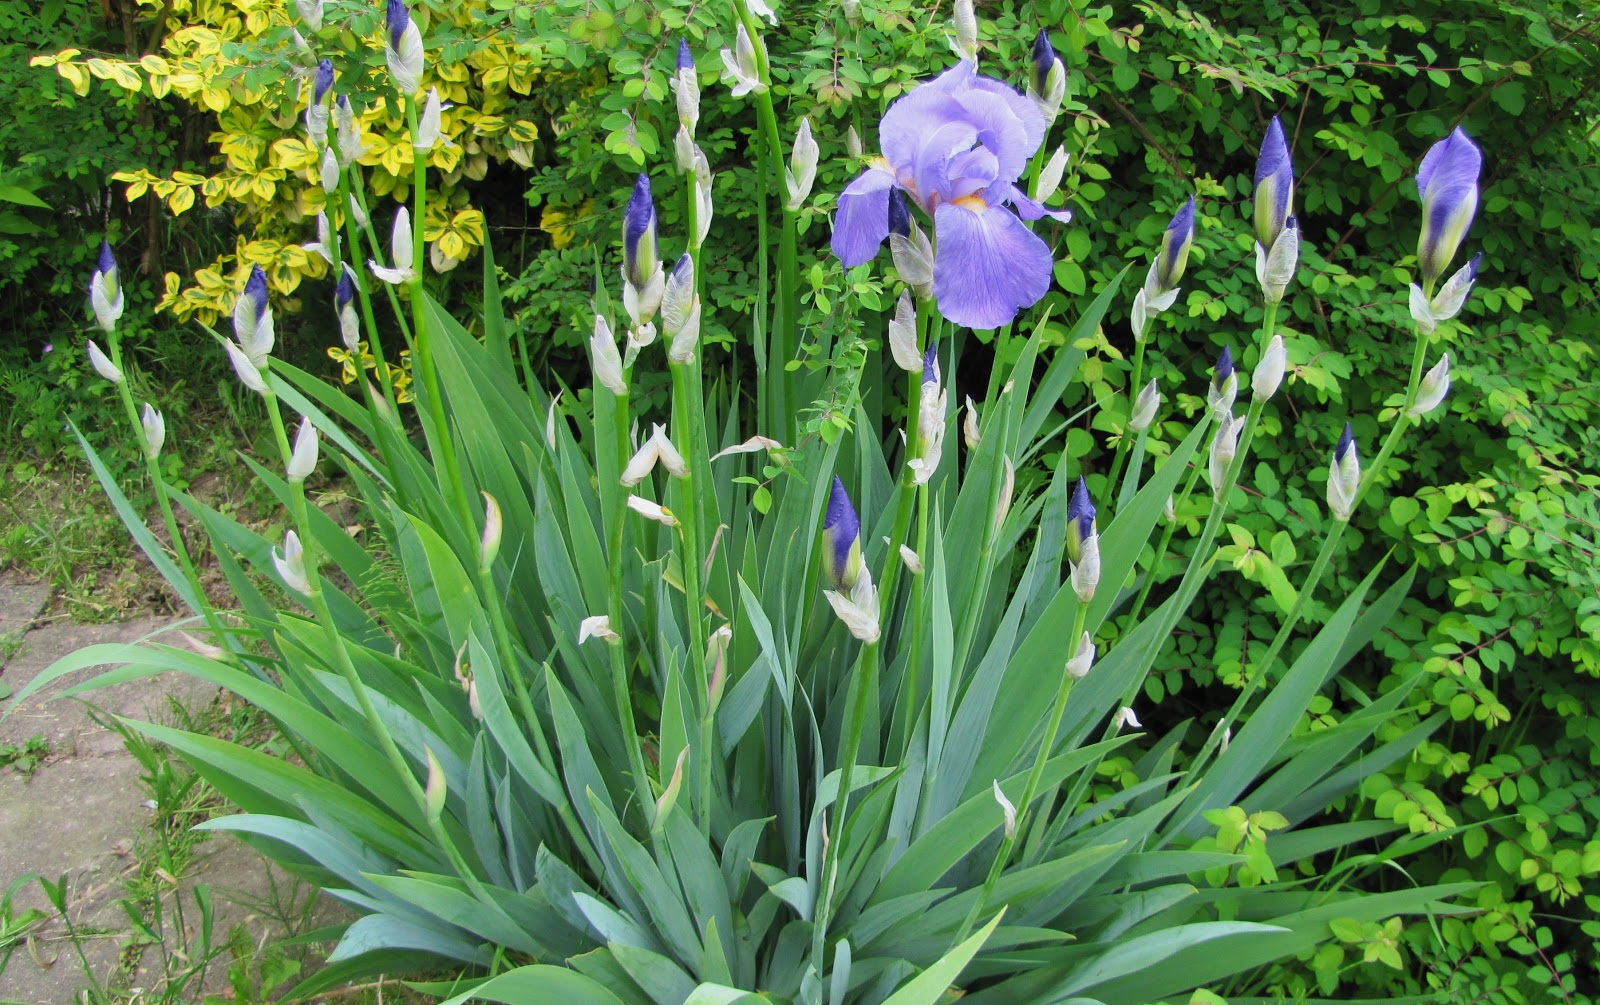 ber's plaatjes: Blauwe (Duitse) Lis in mijn tuin gaat